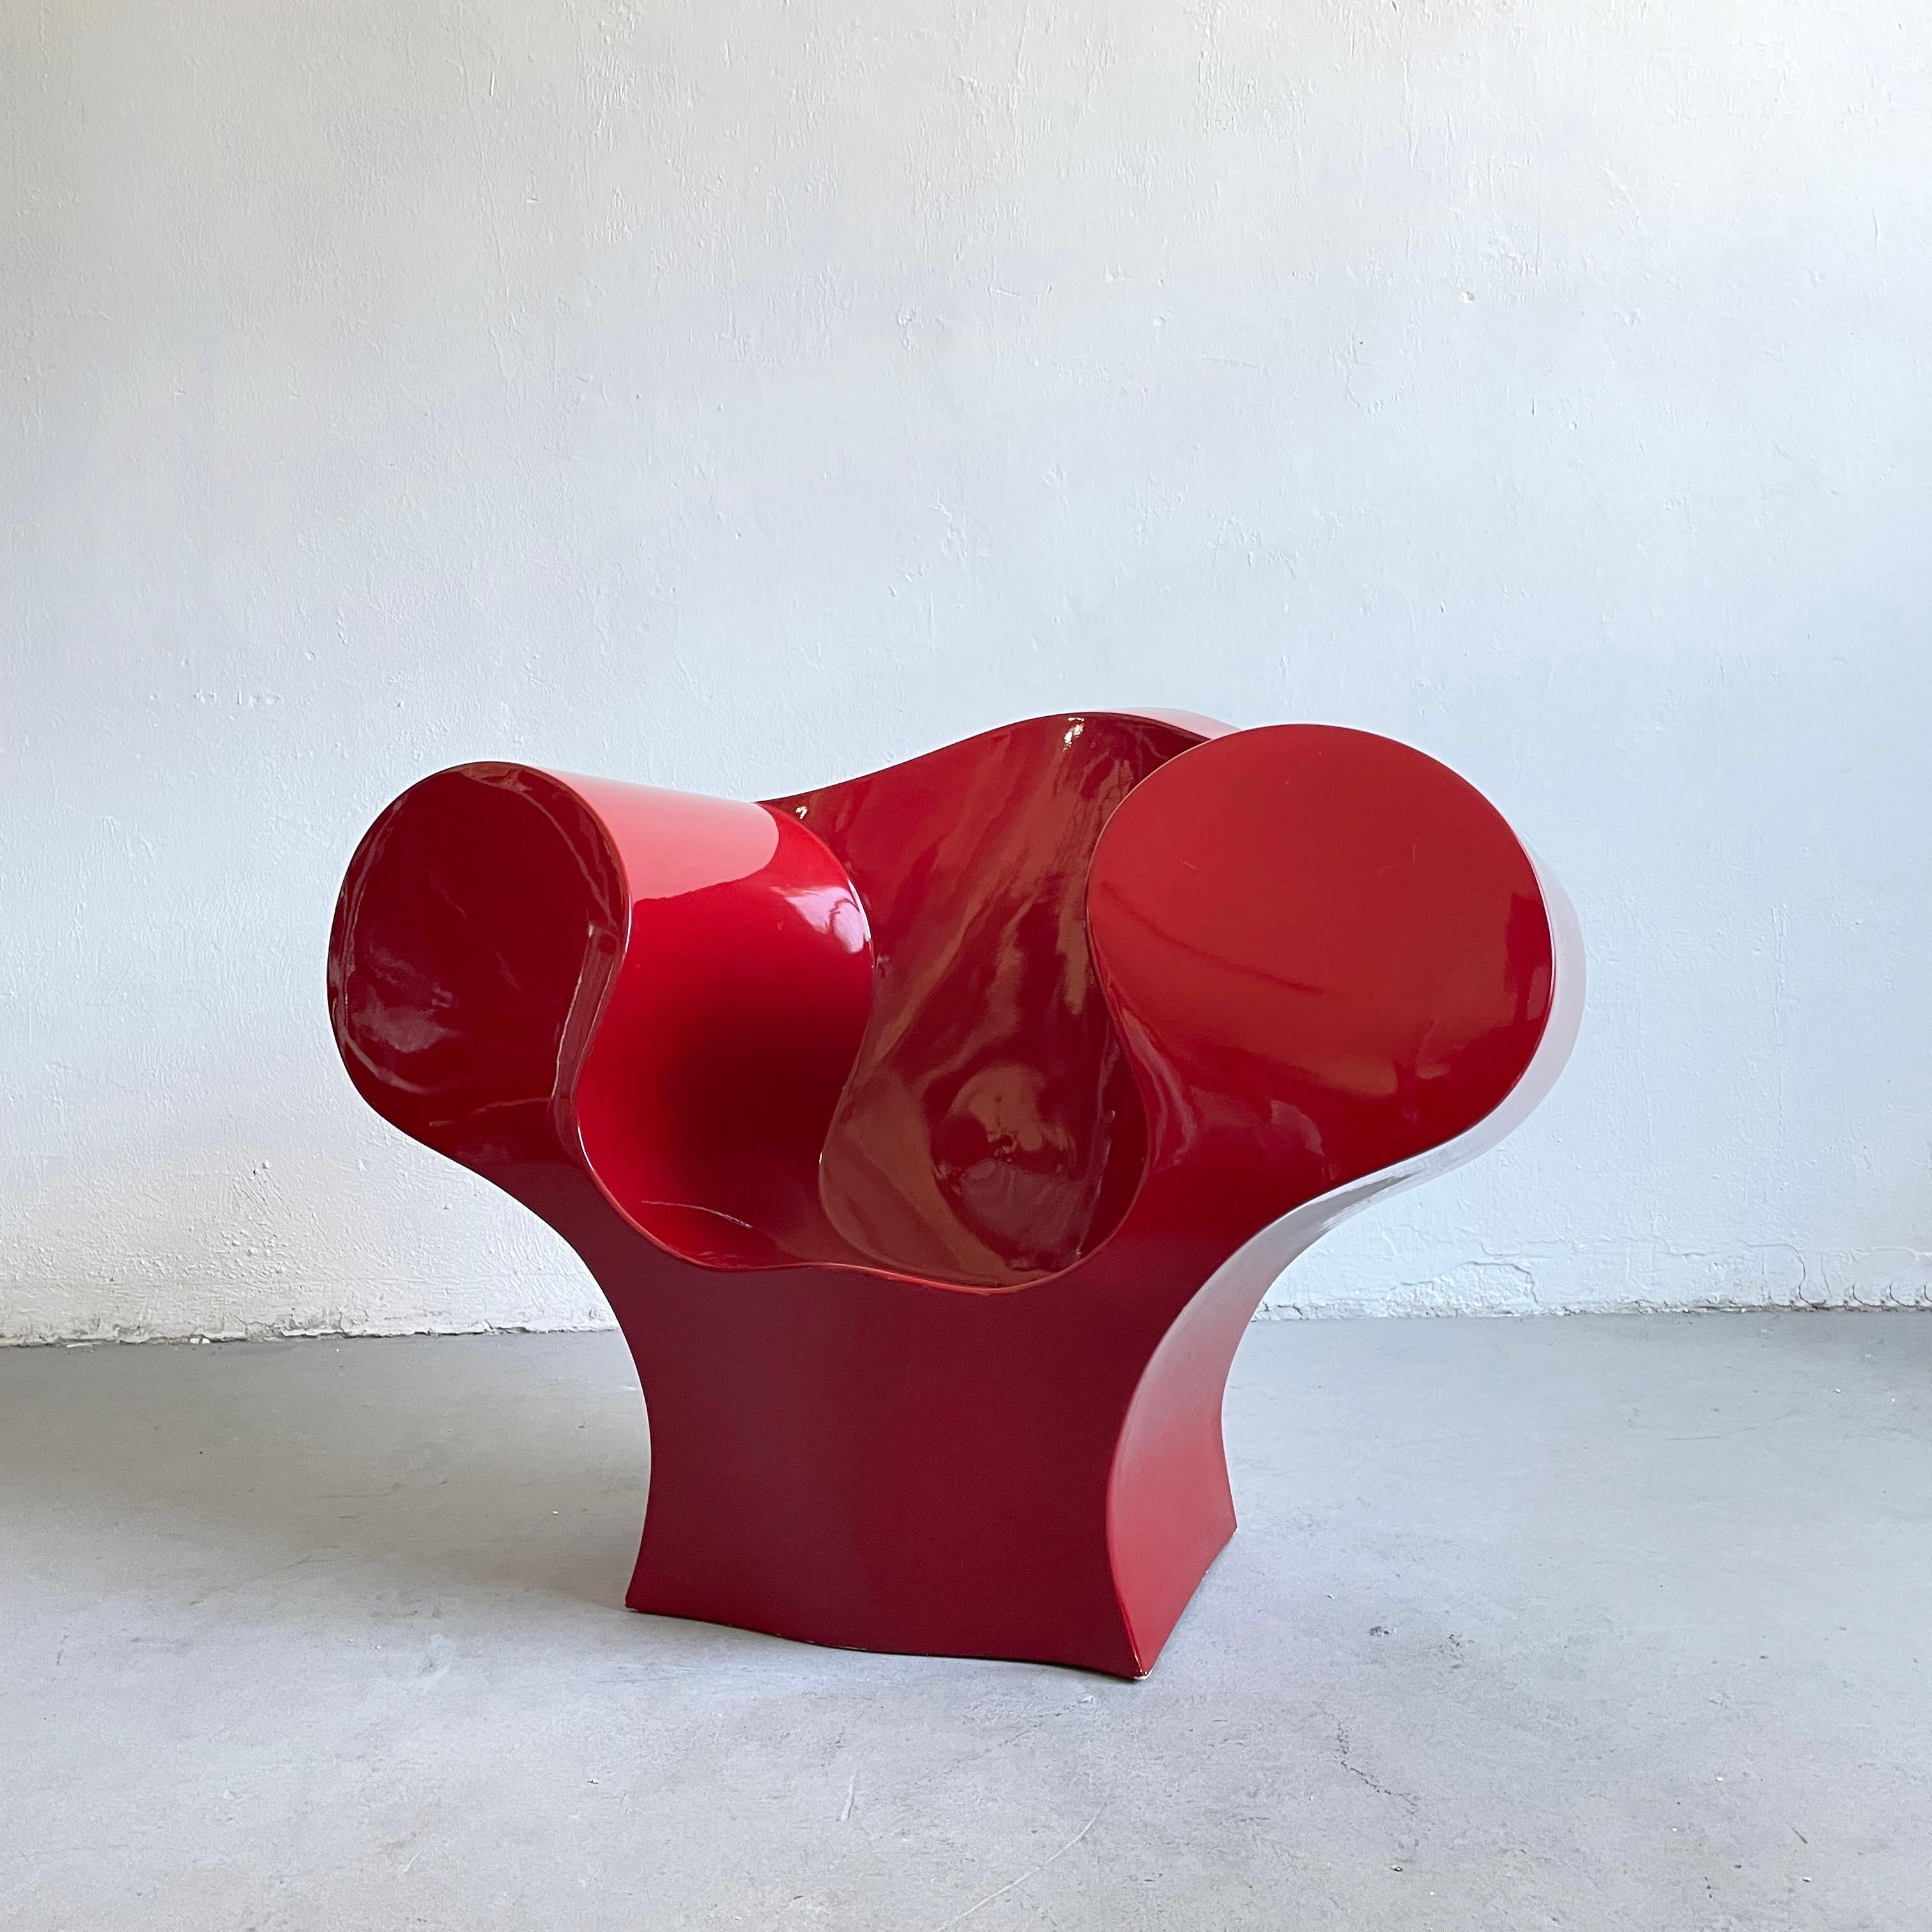 Der ikonische postmoderne Sessel Big-E ( Big Easy ) wurde 1991 von Ron Arad entworfen.

Dies ist eine lackierte Version, die von der italienischen Firma Moroso in den frühen 2000er Jahren hergestellt wurde.

Der Stuhl ist in gutem Zustand und